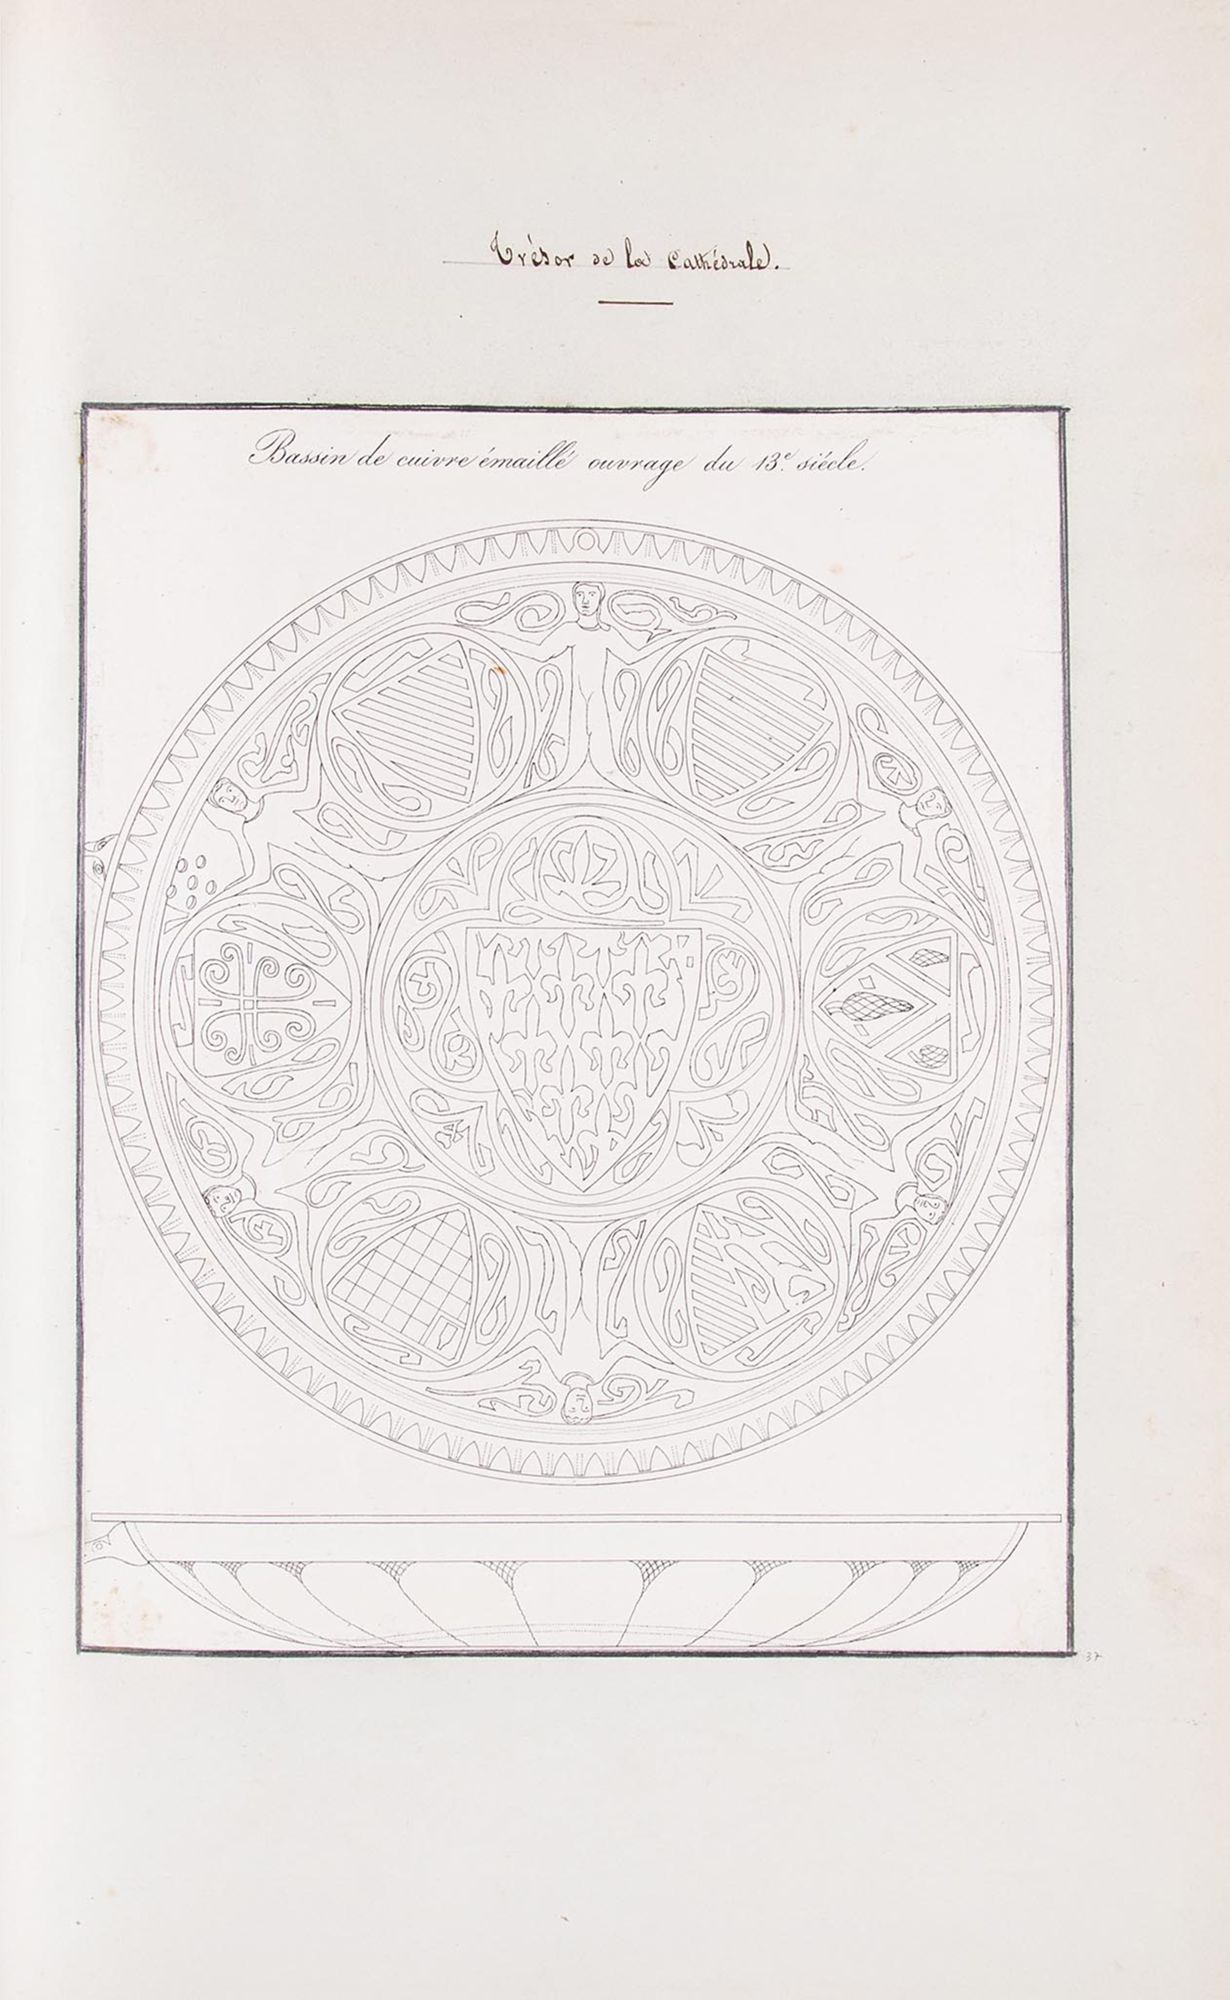 Lithographie. Trésor de la cathédrale Saint-Pierre et Saint-Paul. « Bassin de cuivre émaillé, ouvrage du 13e siècle ».